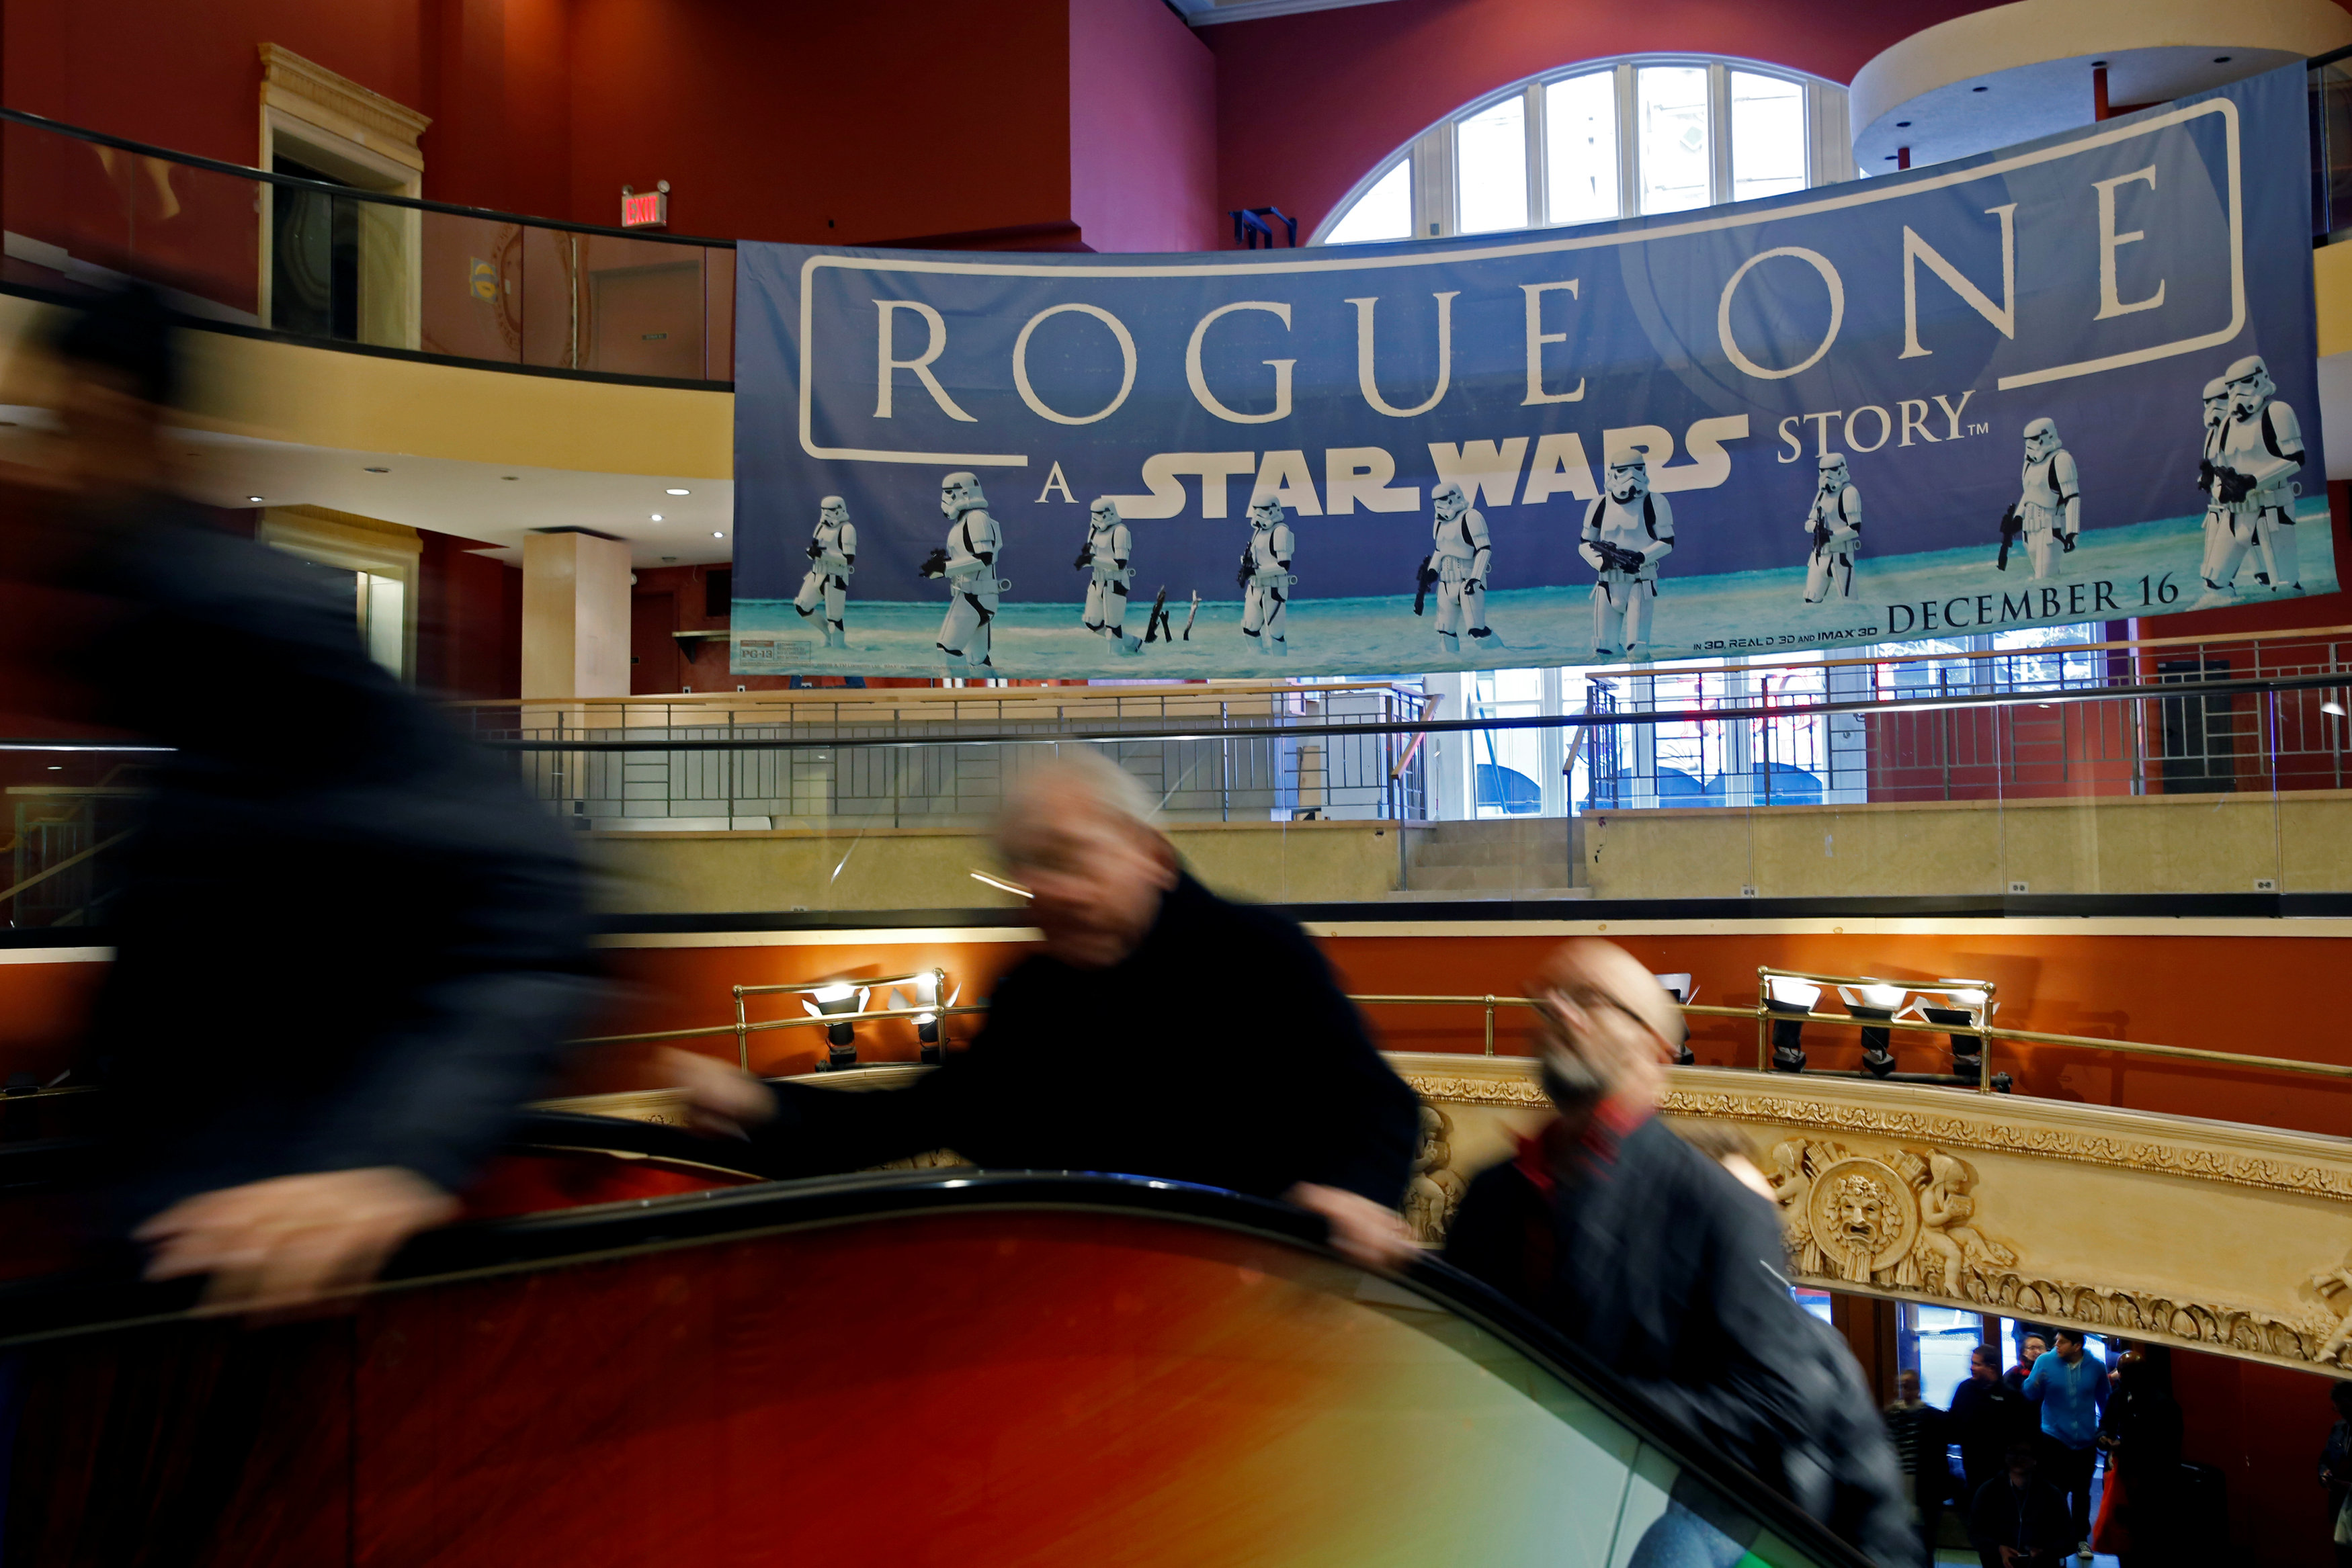 “Rogue One” se mantiene con fuerza en la cima de la taquilla en EEUU y Canadá